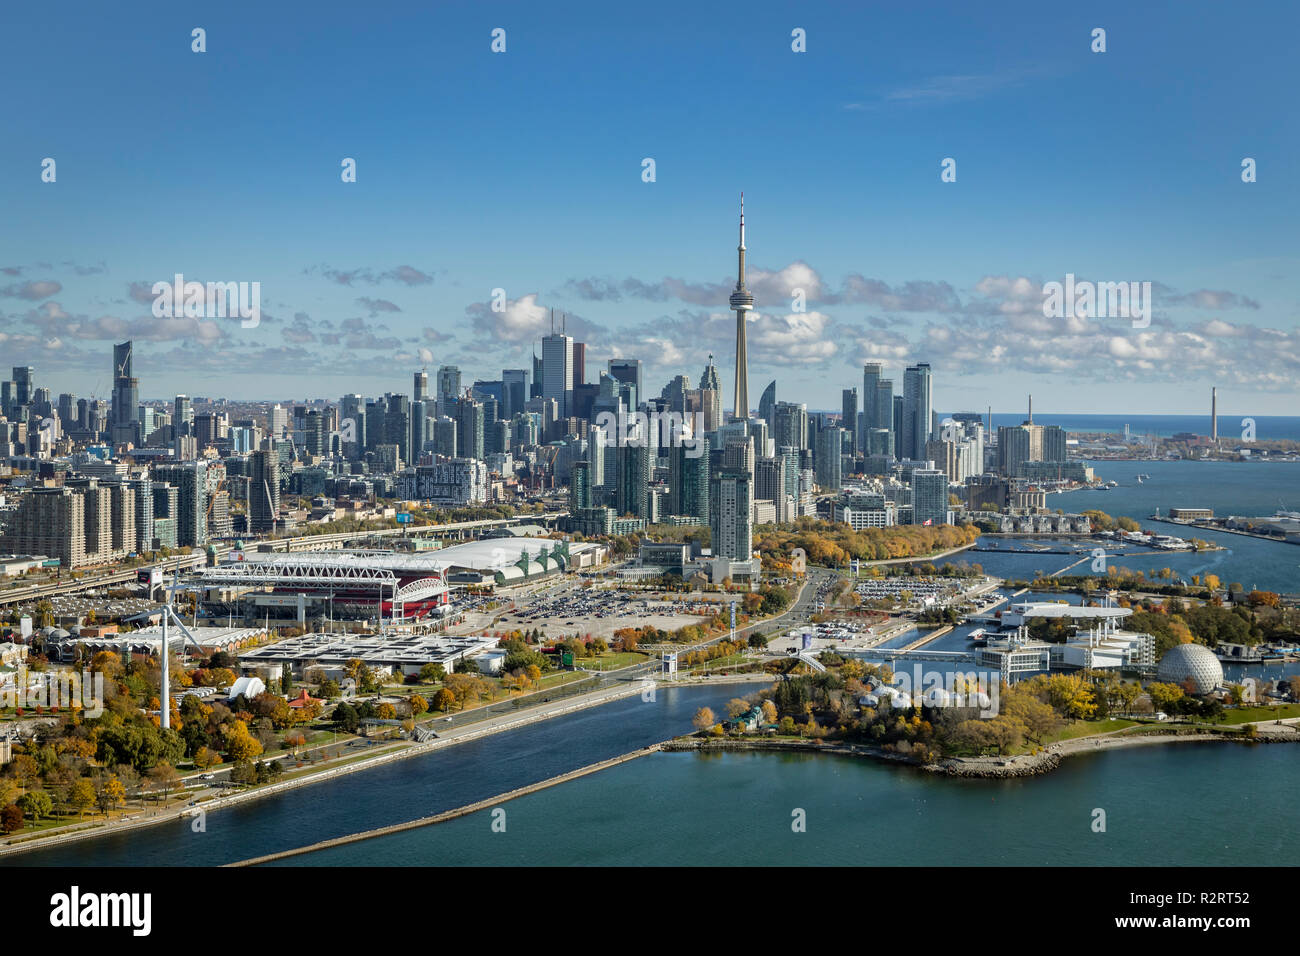 Una veduta aerea di Toronto Downtown con Ontario Place in primo piano. Sulla rotta di avvicinamento a Bill Vescovo Aeroporto dall'occidente. Foto Stock